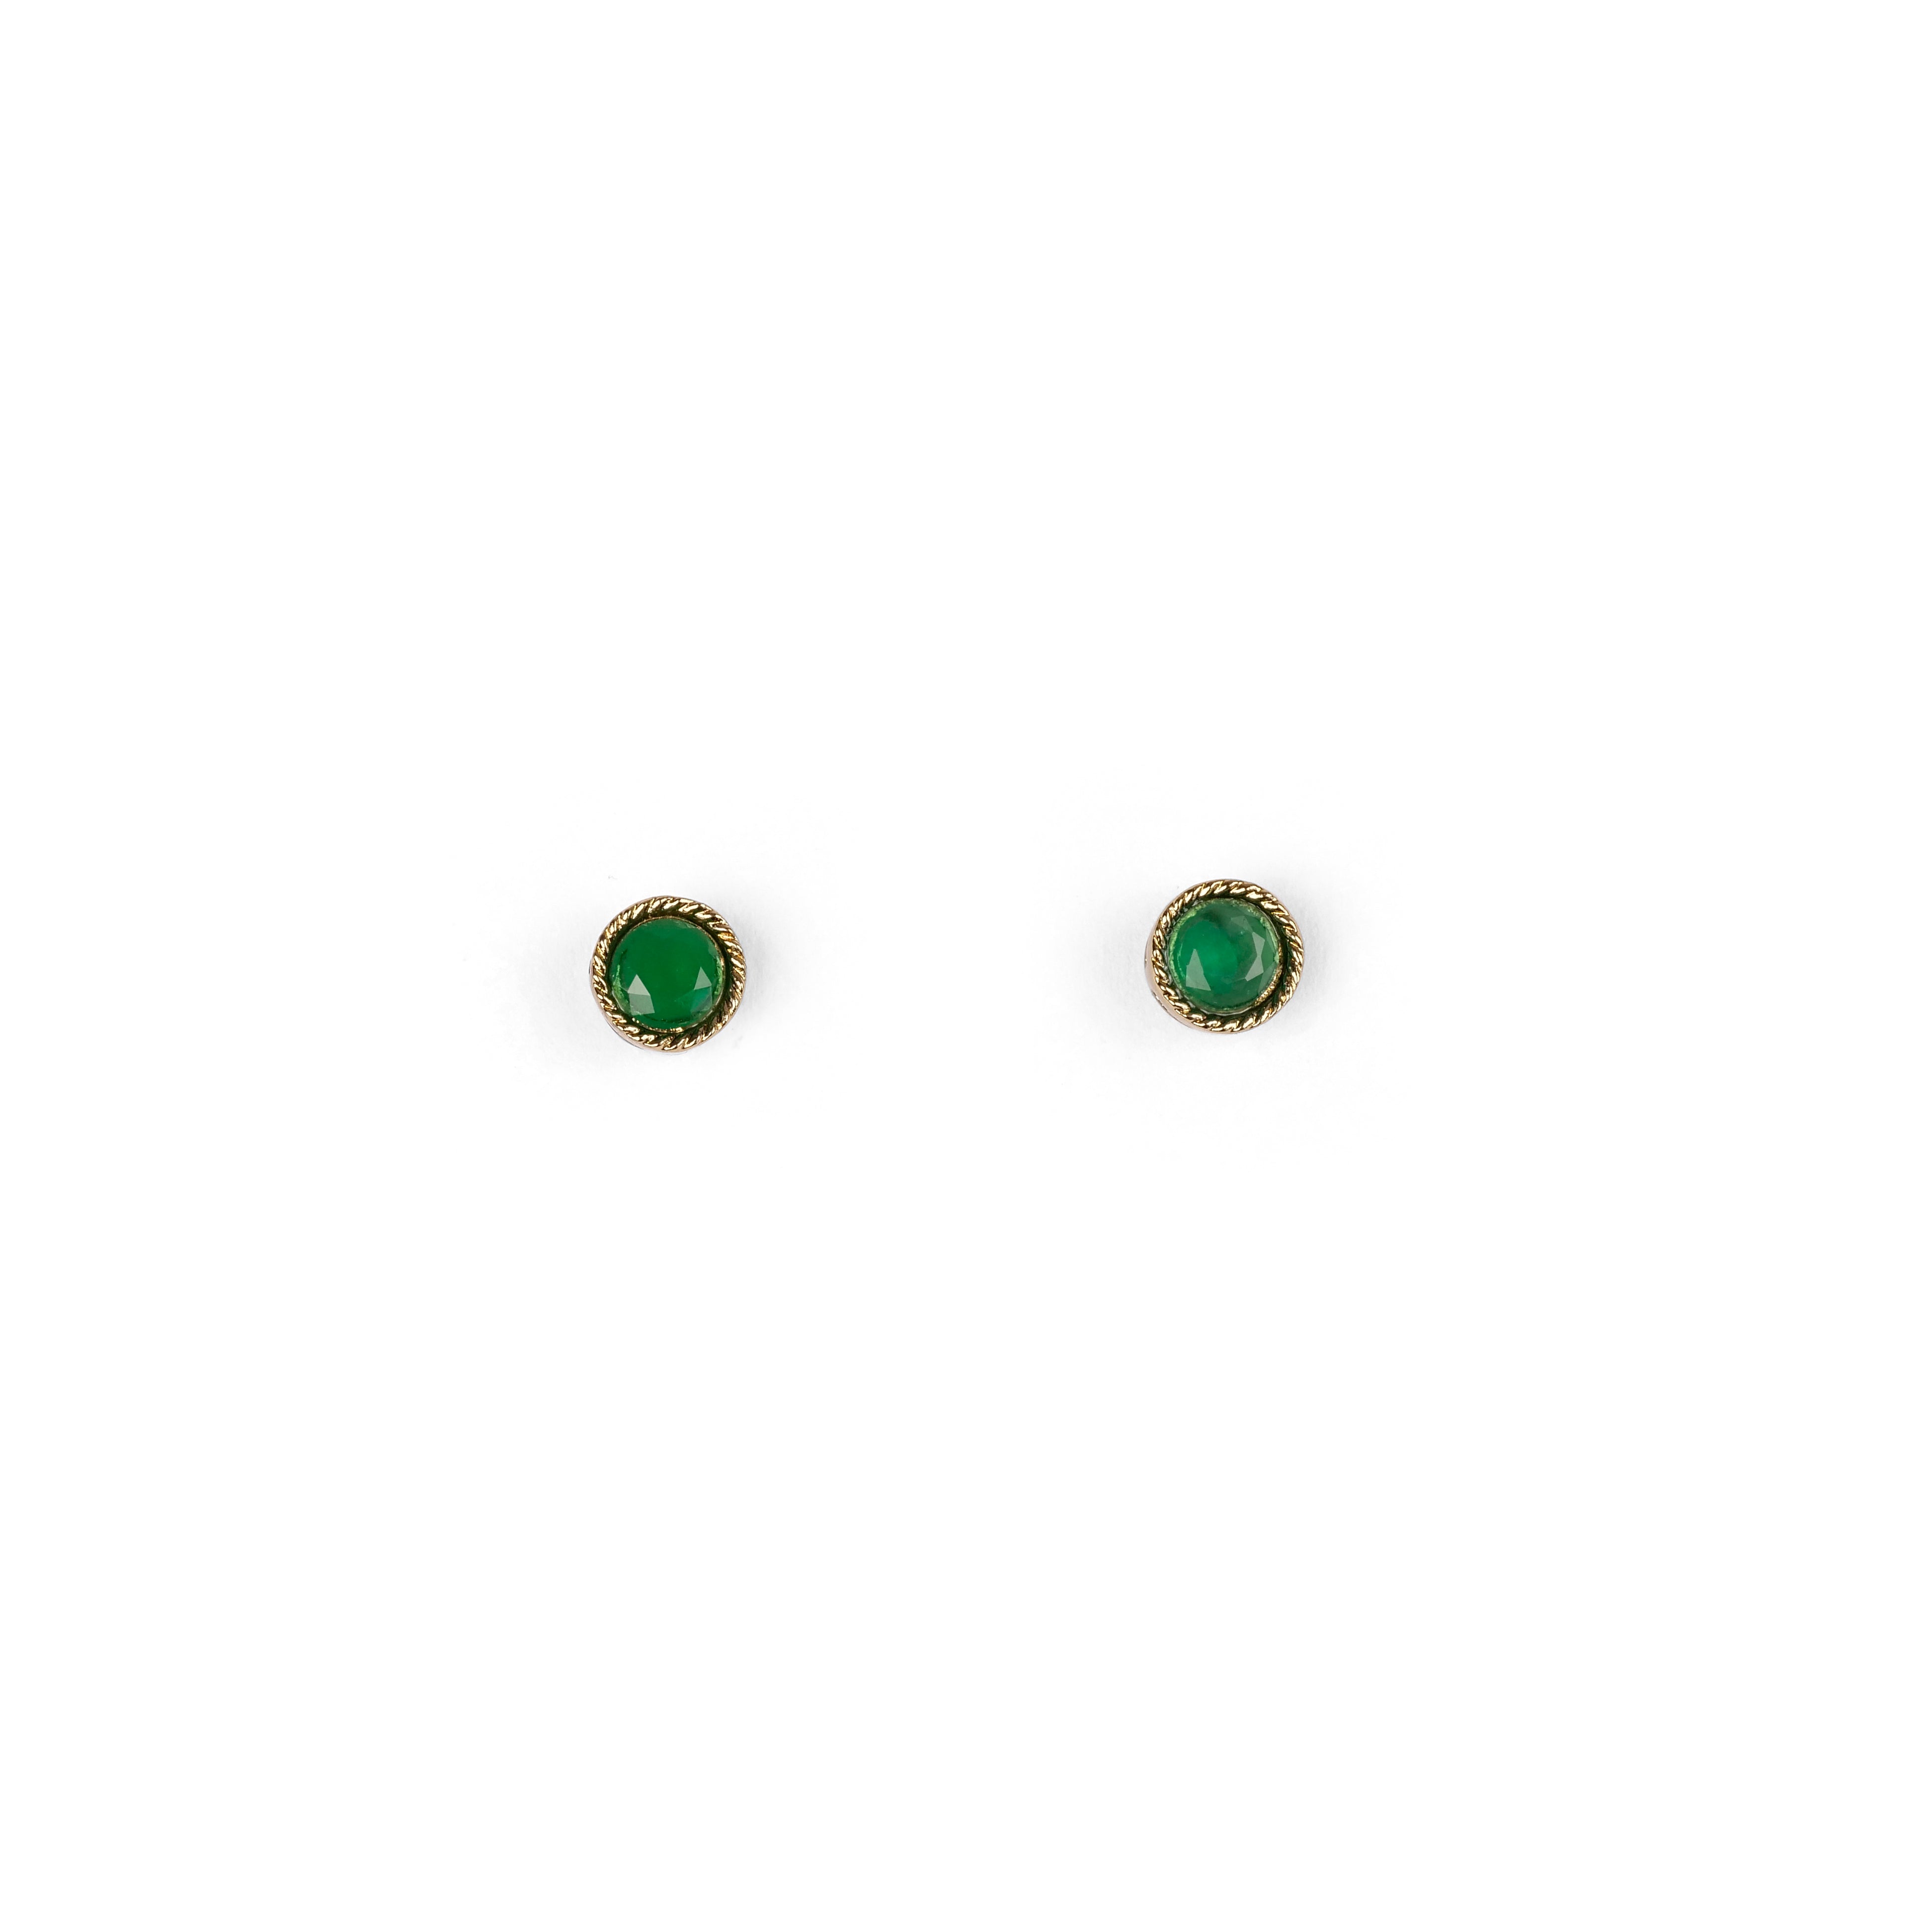 Lia 4mm Ear Studs in Green